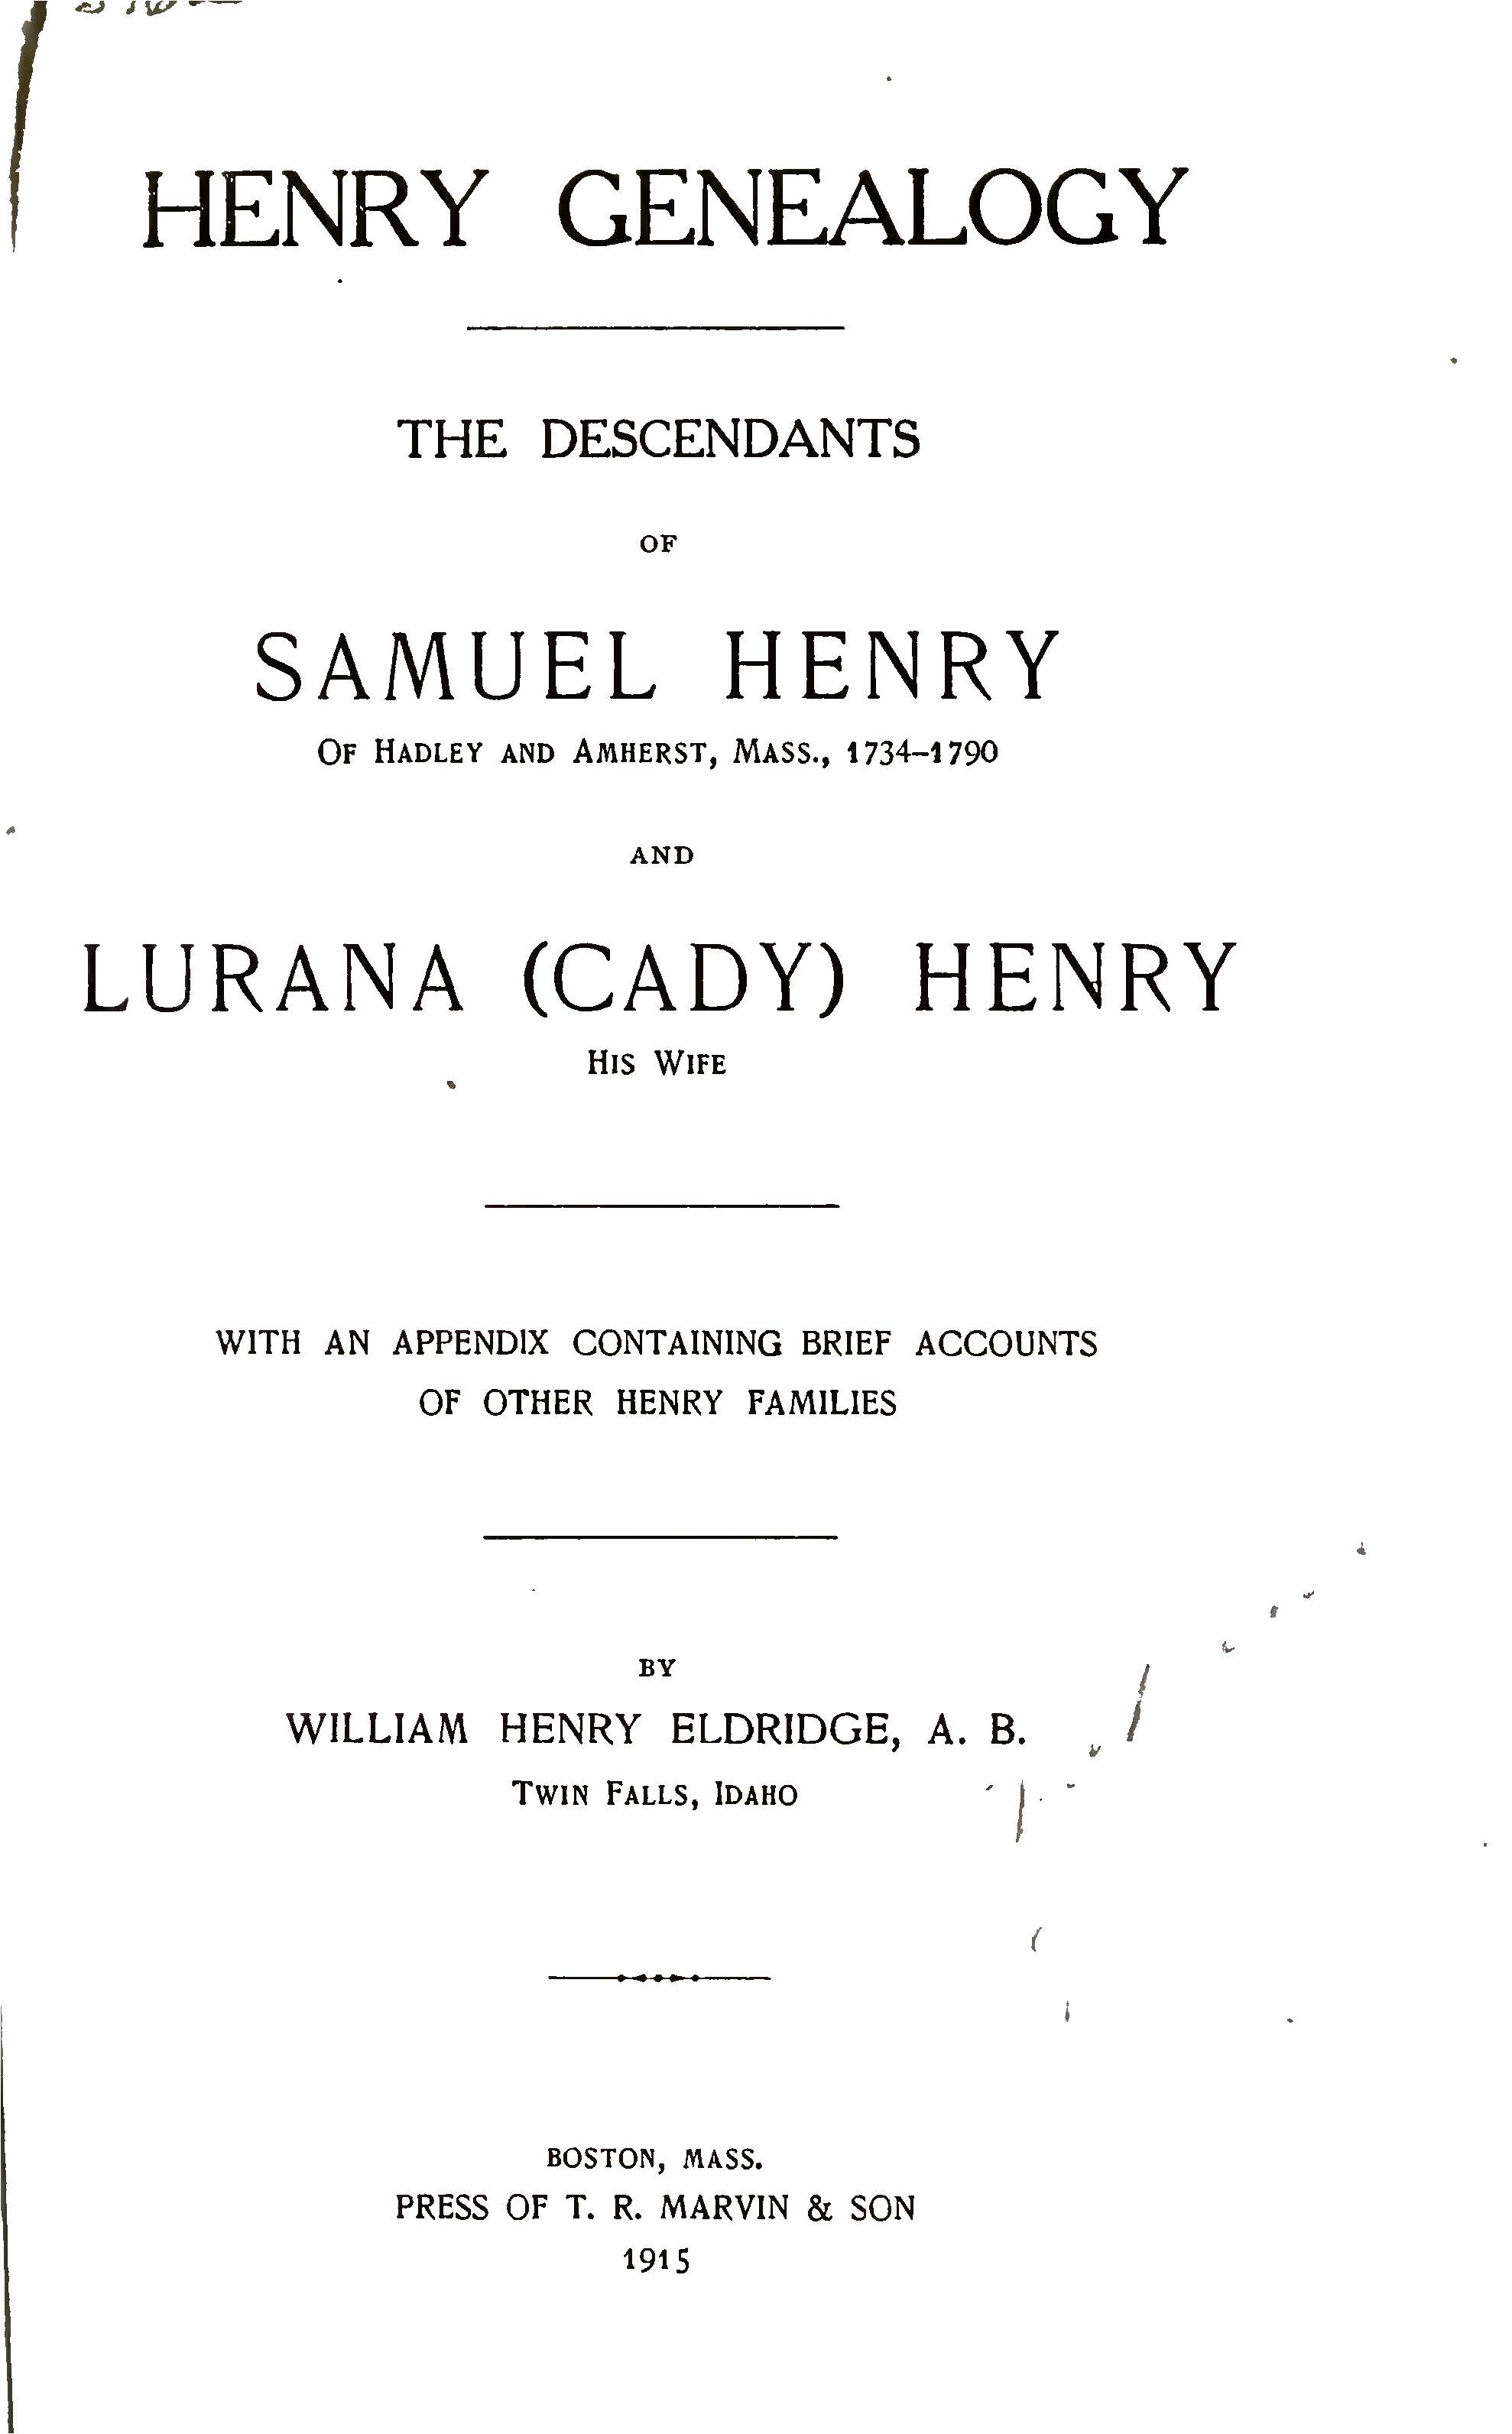 Henry Genealogy The descendants of Samuel Henry of Hadley and Amherst Massachusetts 1734-1790